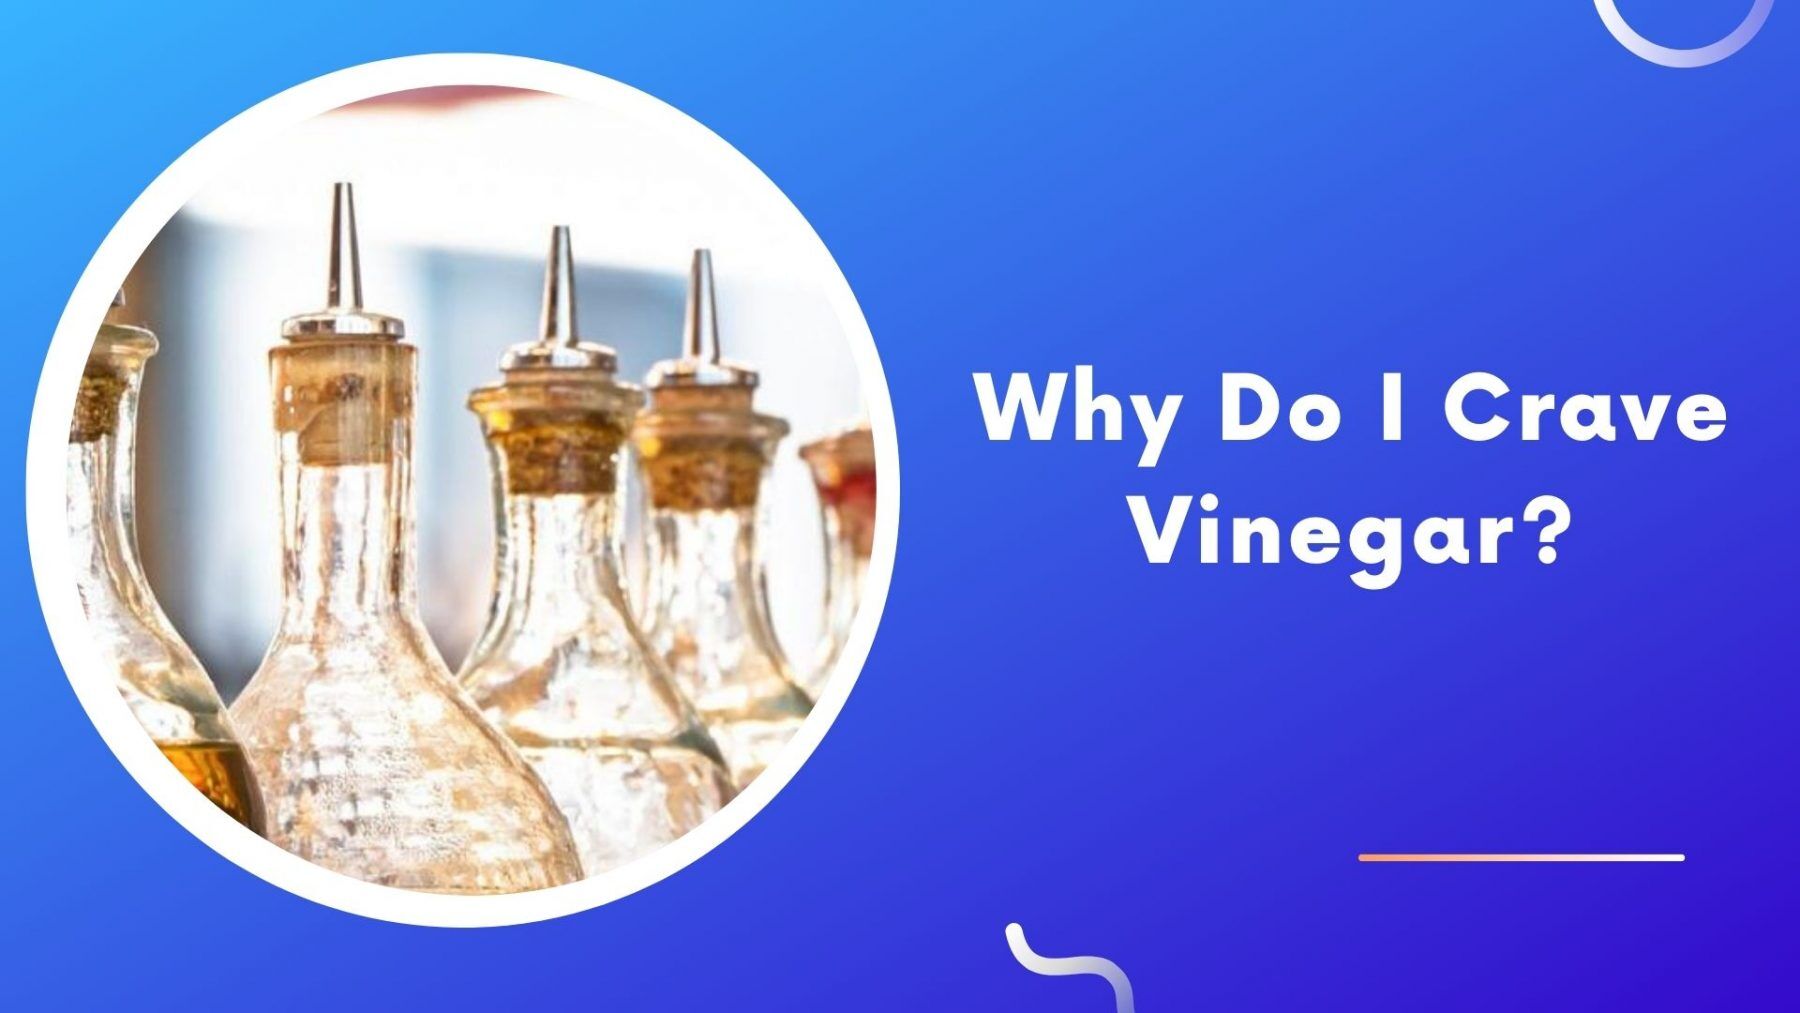 Why Do I Crave Vinegar